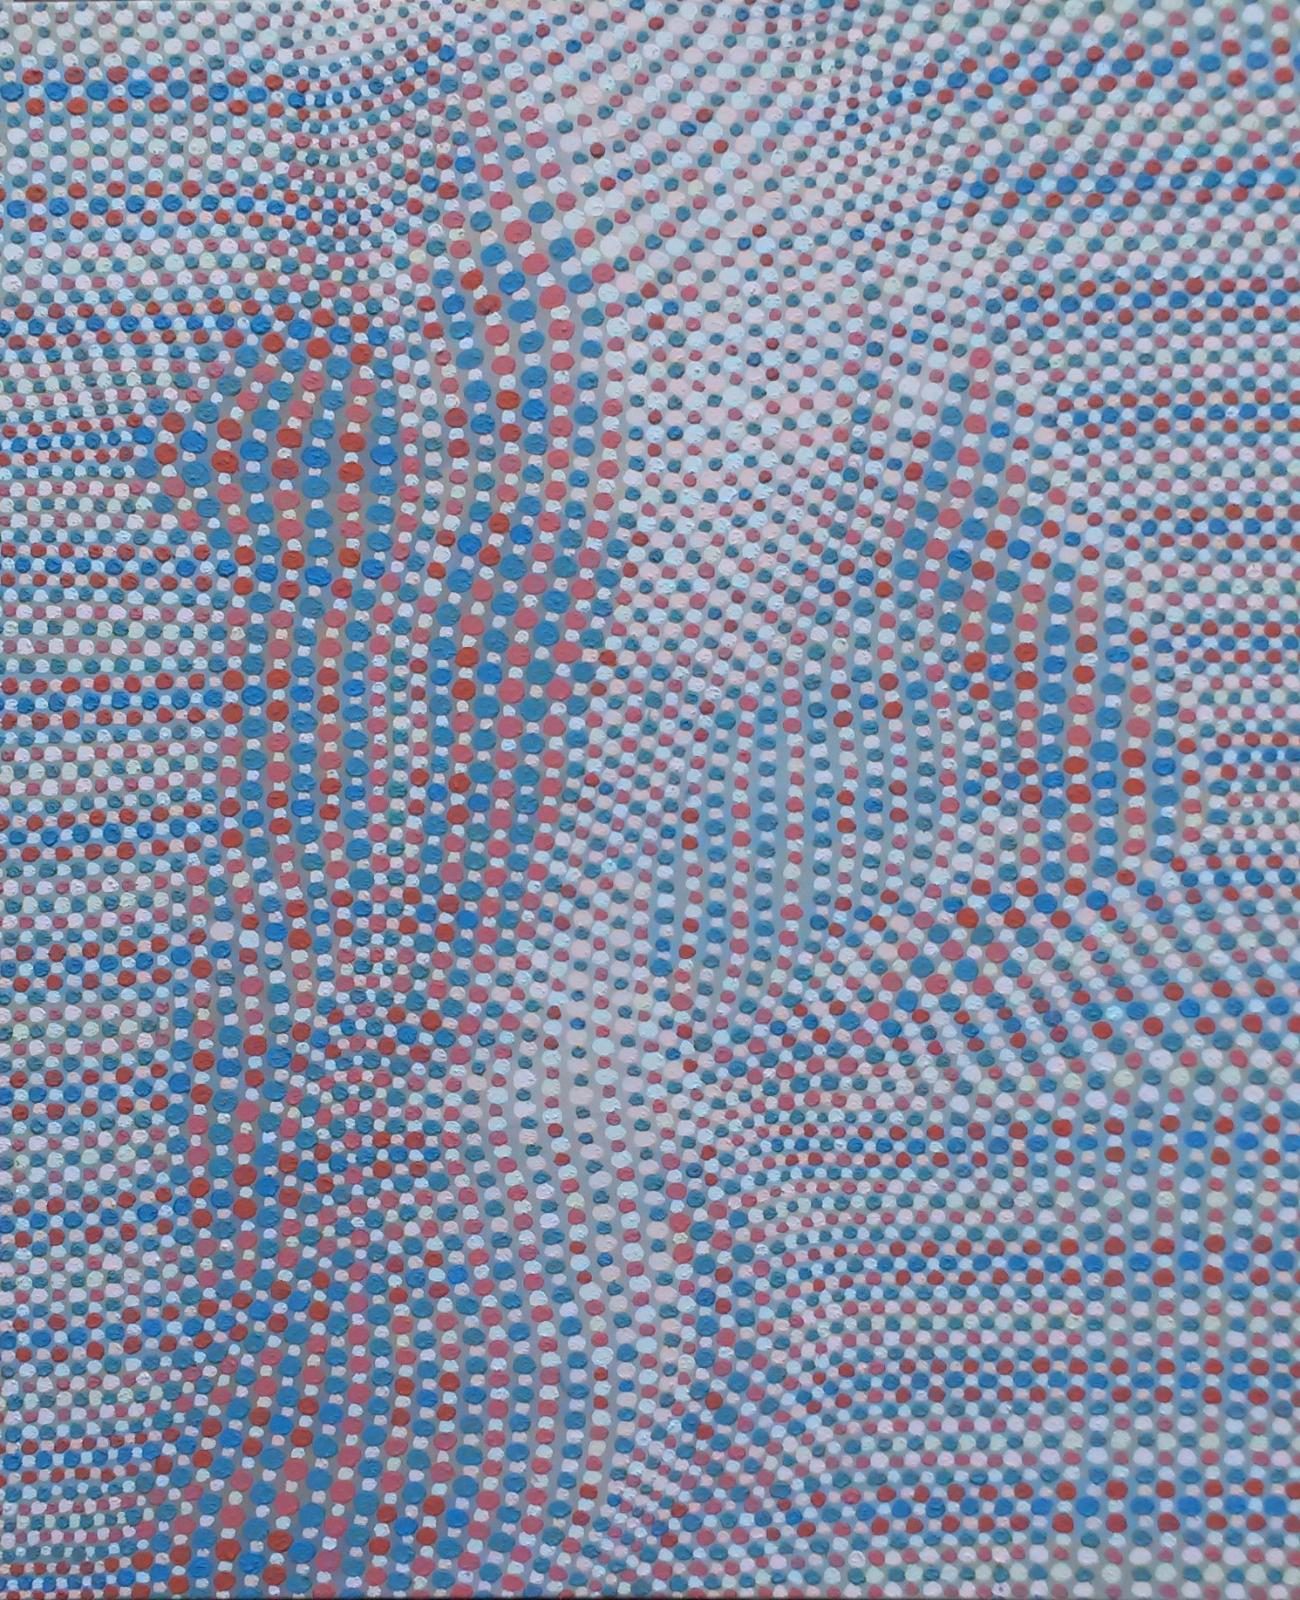 Andreas Lau, Halbakt, 2015, Eitempera auf Nessel, 120 x 100 cm, laa012kü, Preis auf Anfrage